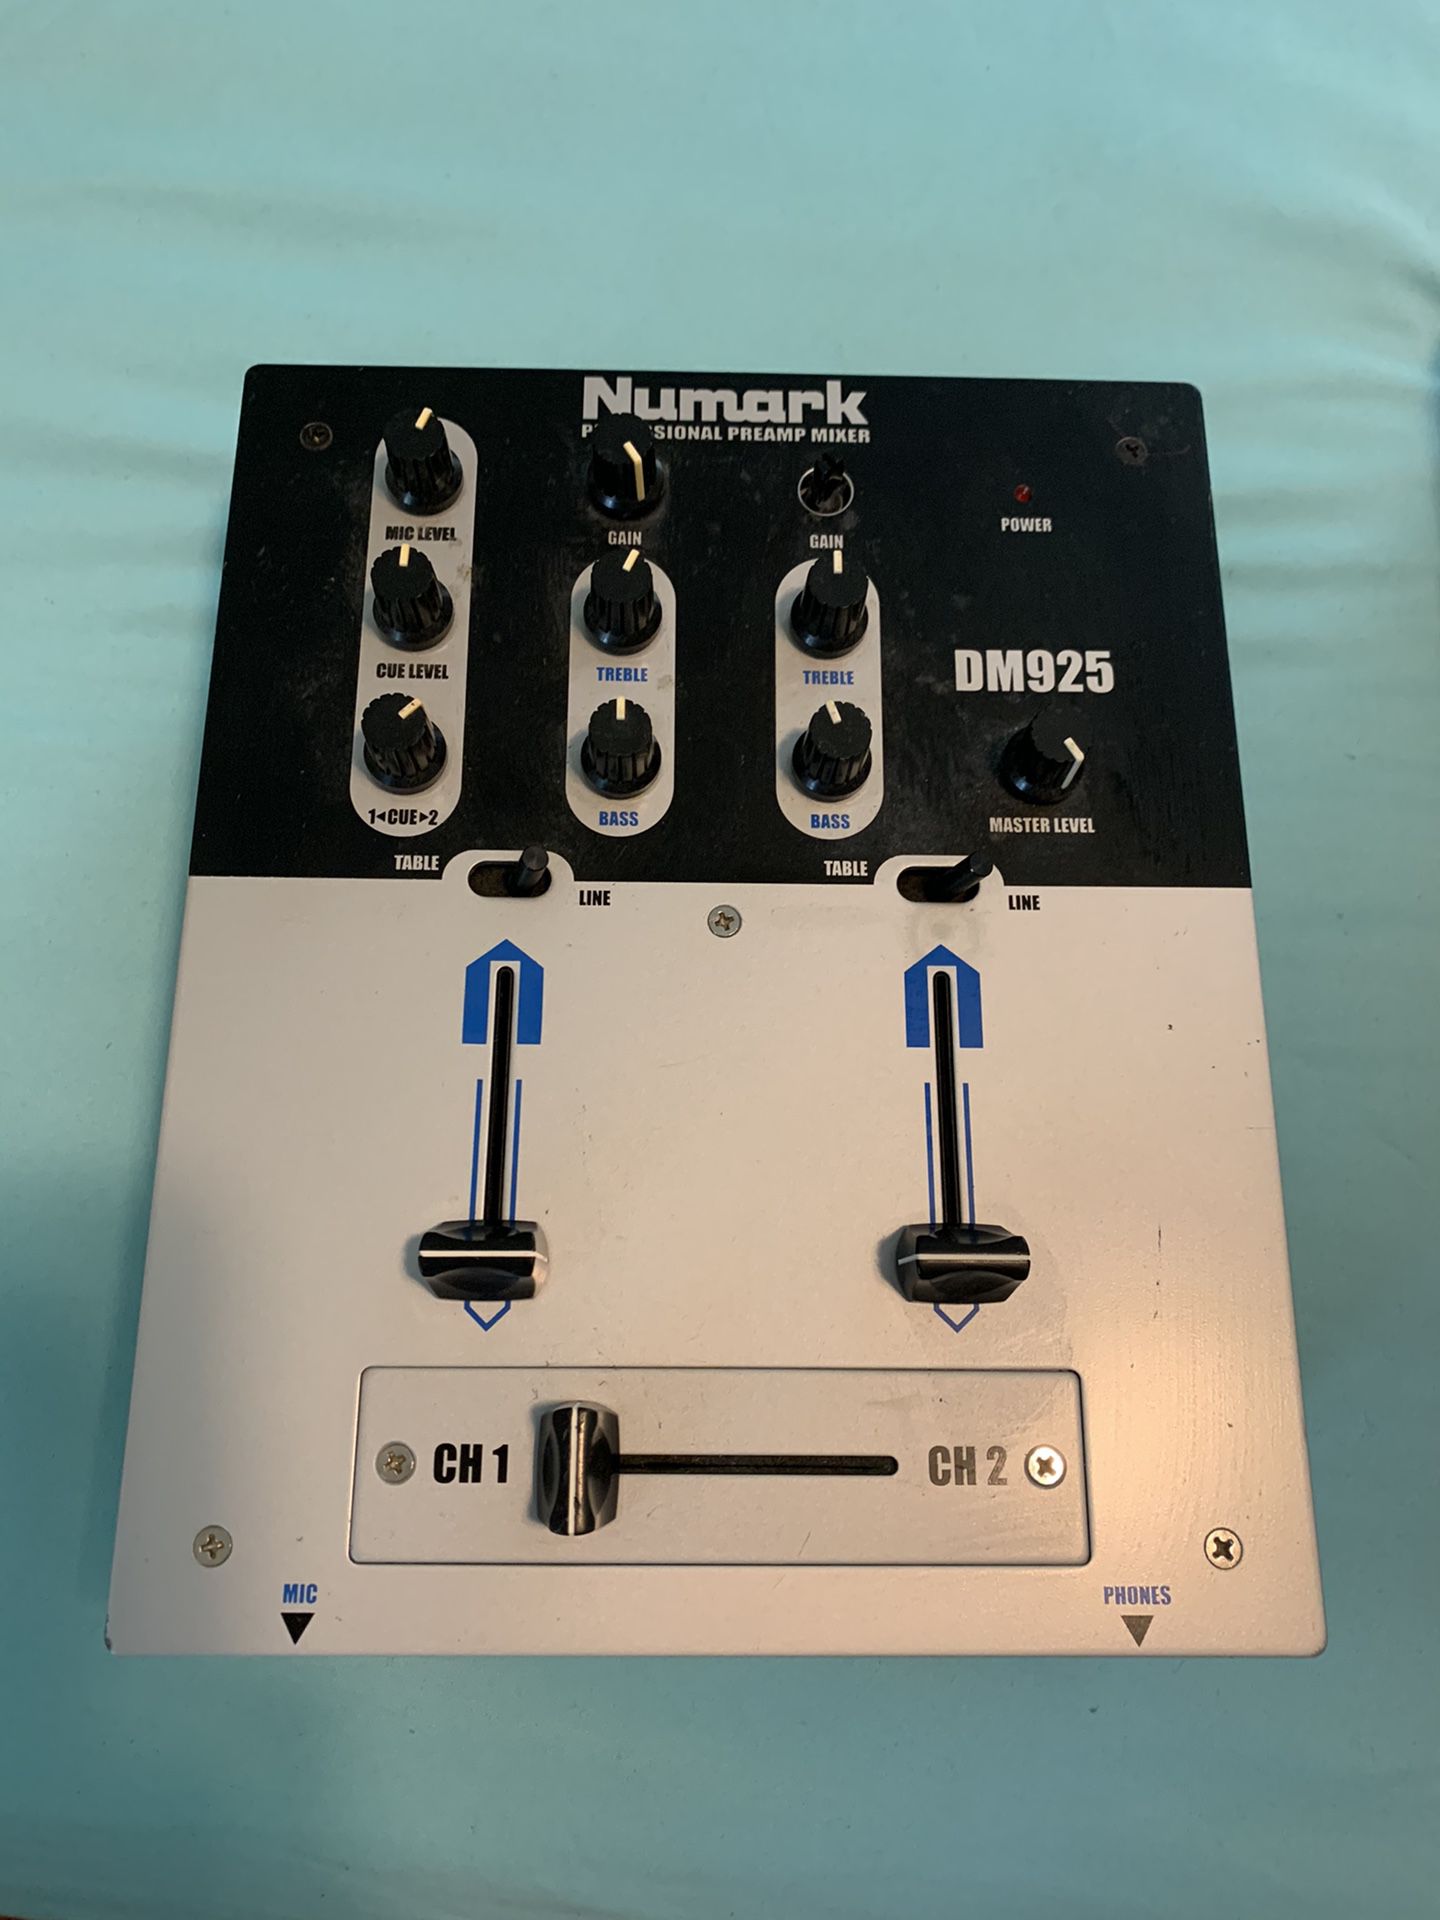 Numark Mixer Dj equipments